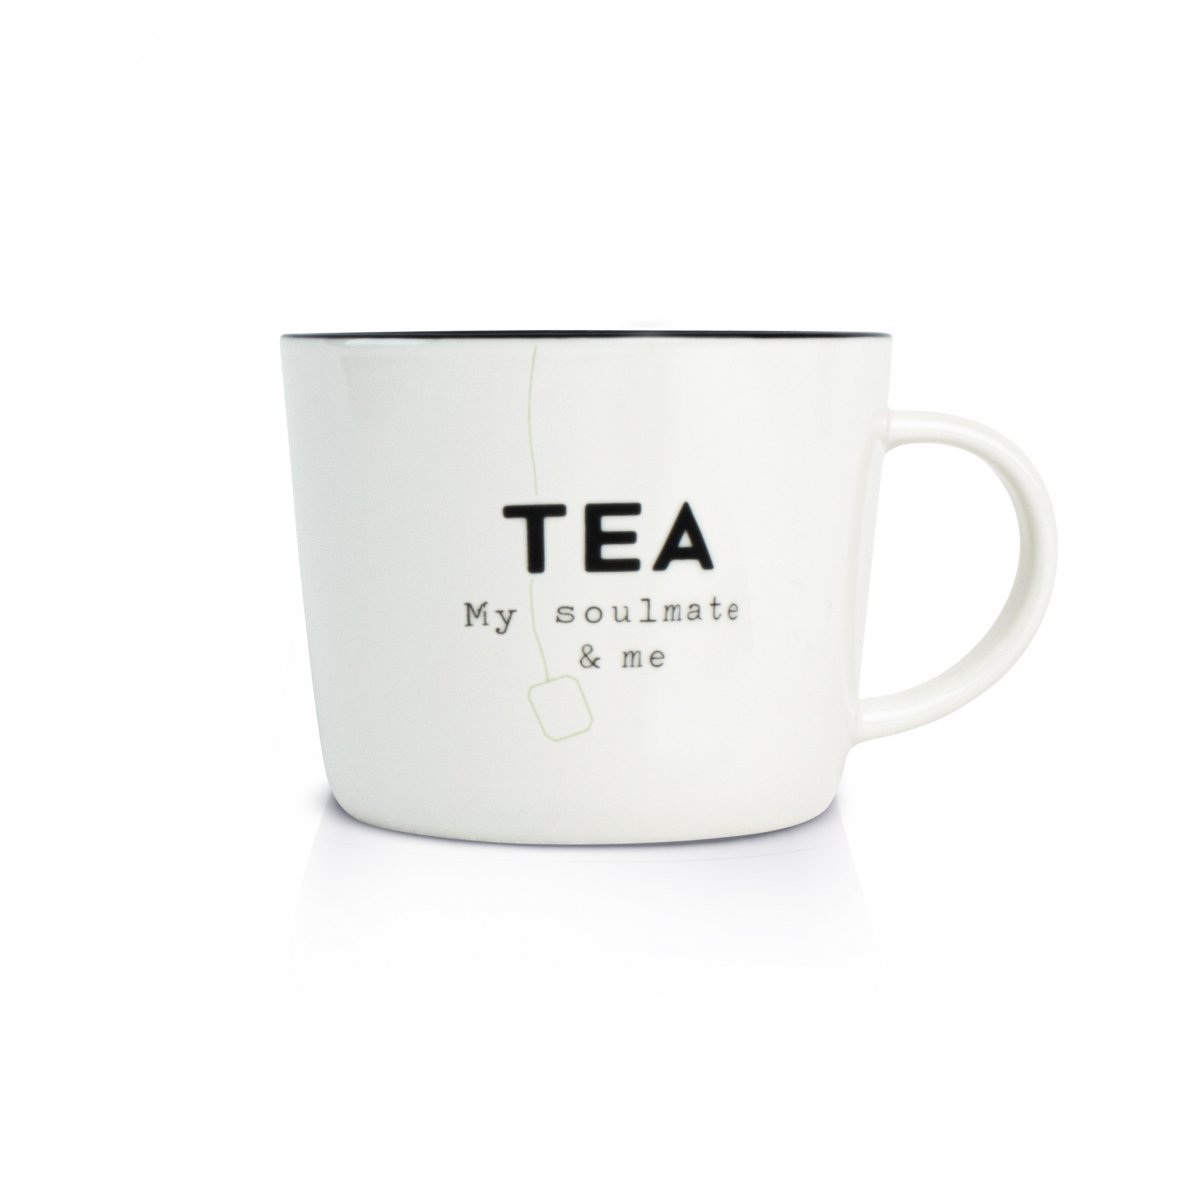 tea; mini mug; porcelain; κούπα; πορσελάνη; dutch rose; mayestic